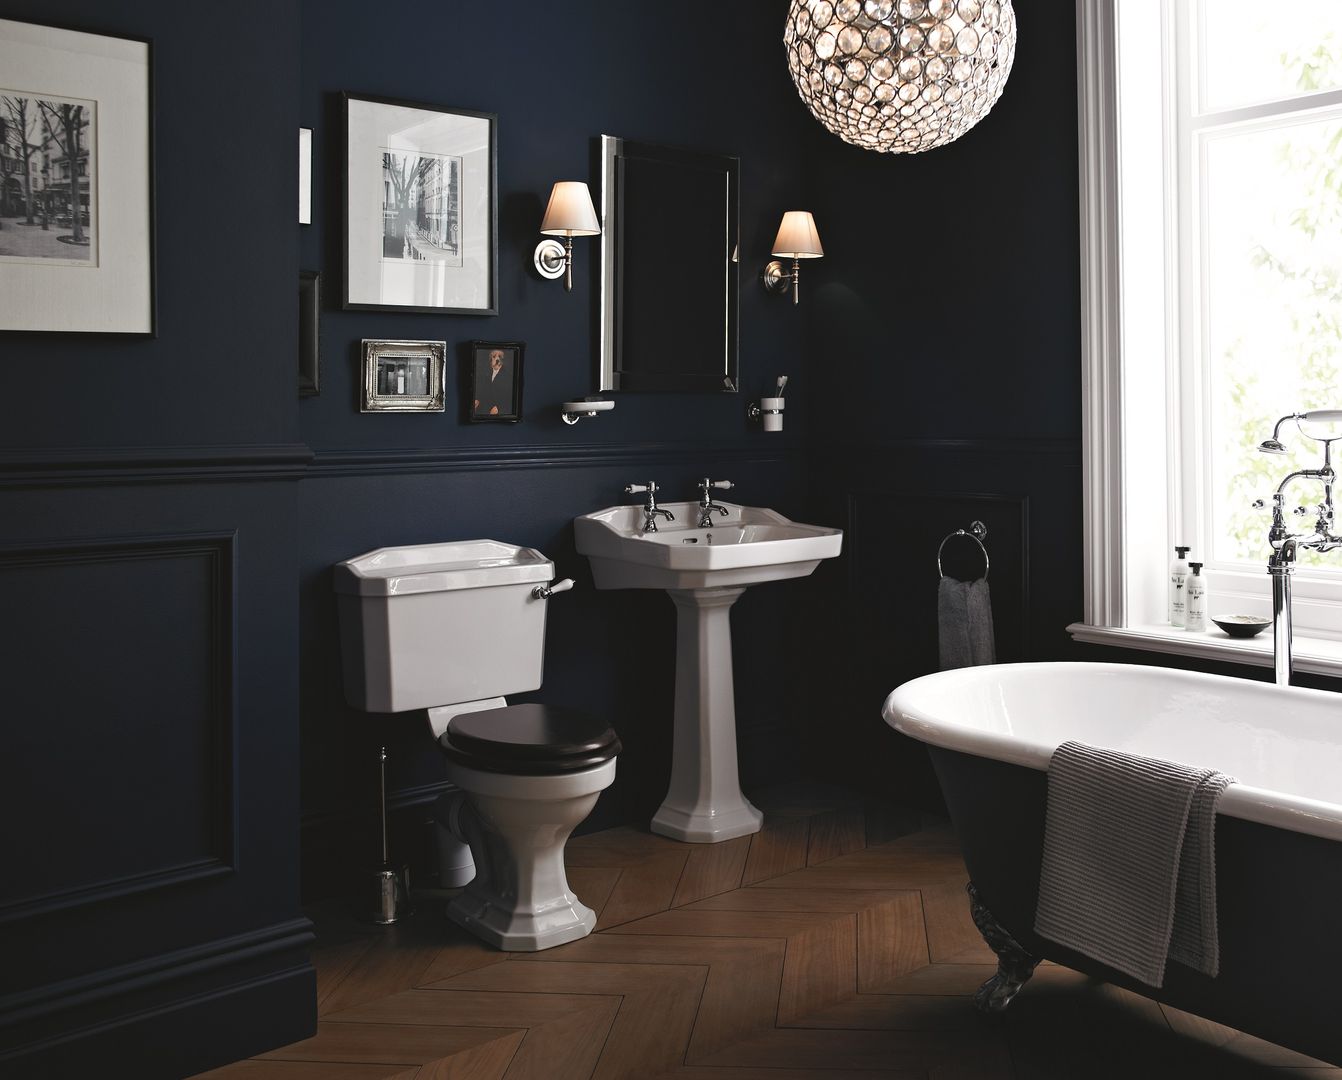 Granley suite Heritage Bathrooms Bagno in stile classico Granley